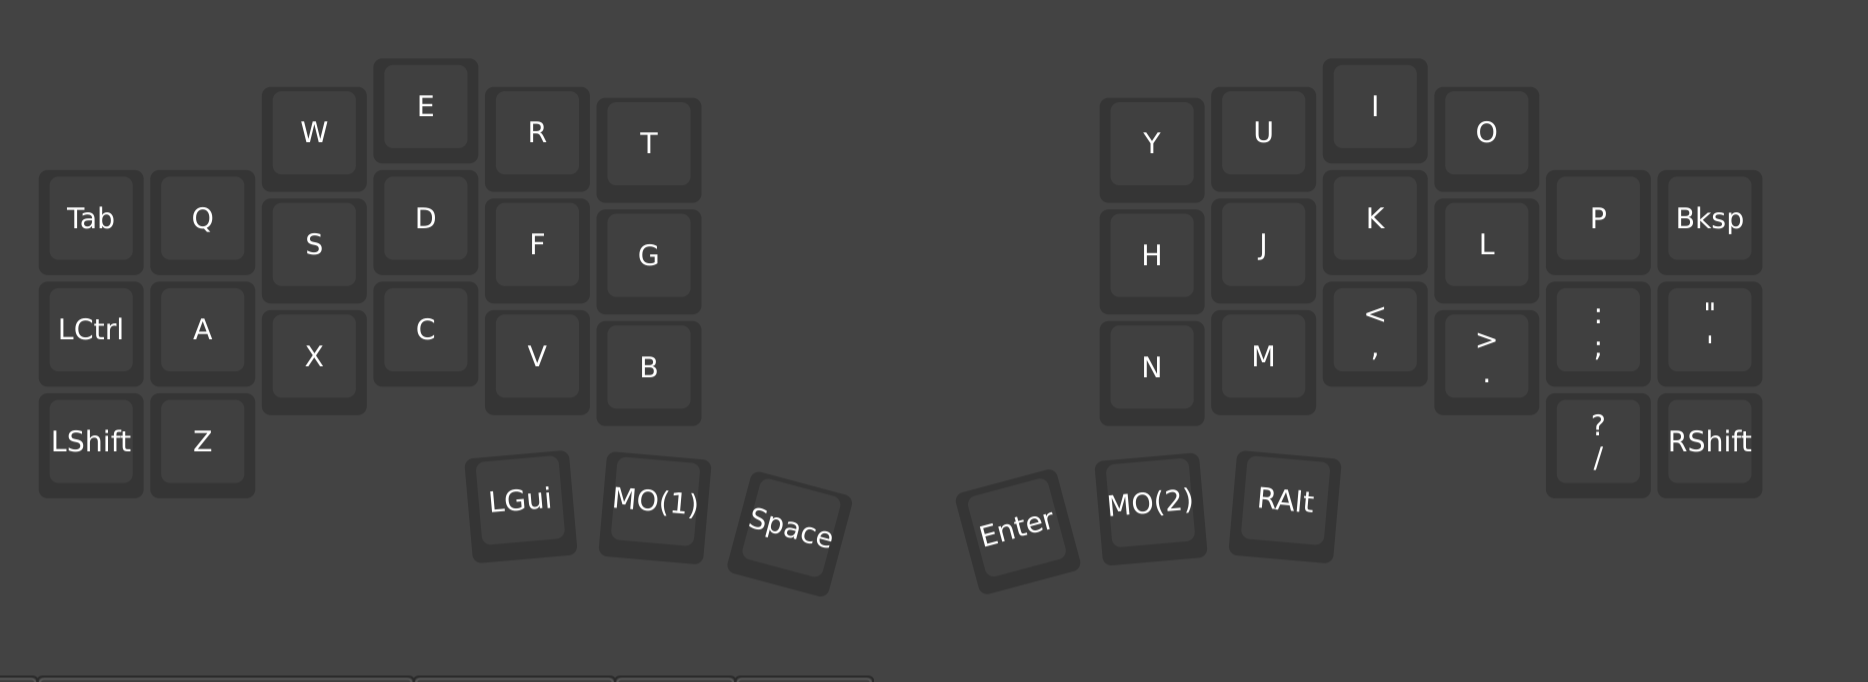 keyboard layout layer zero